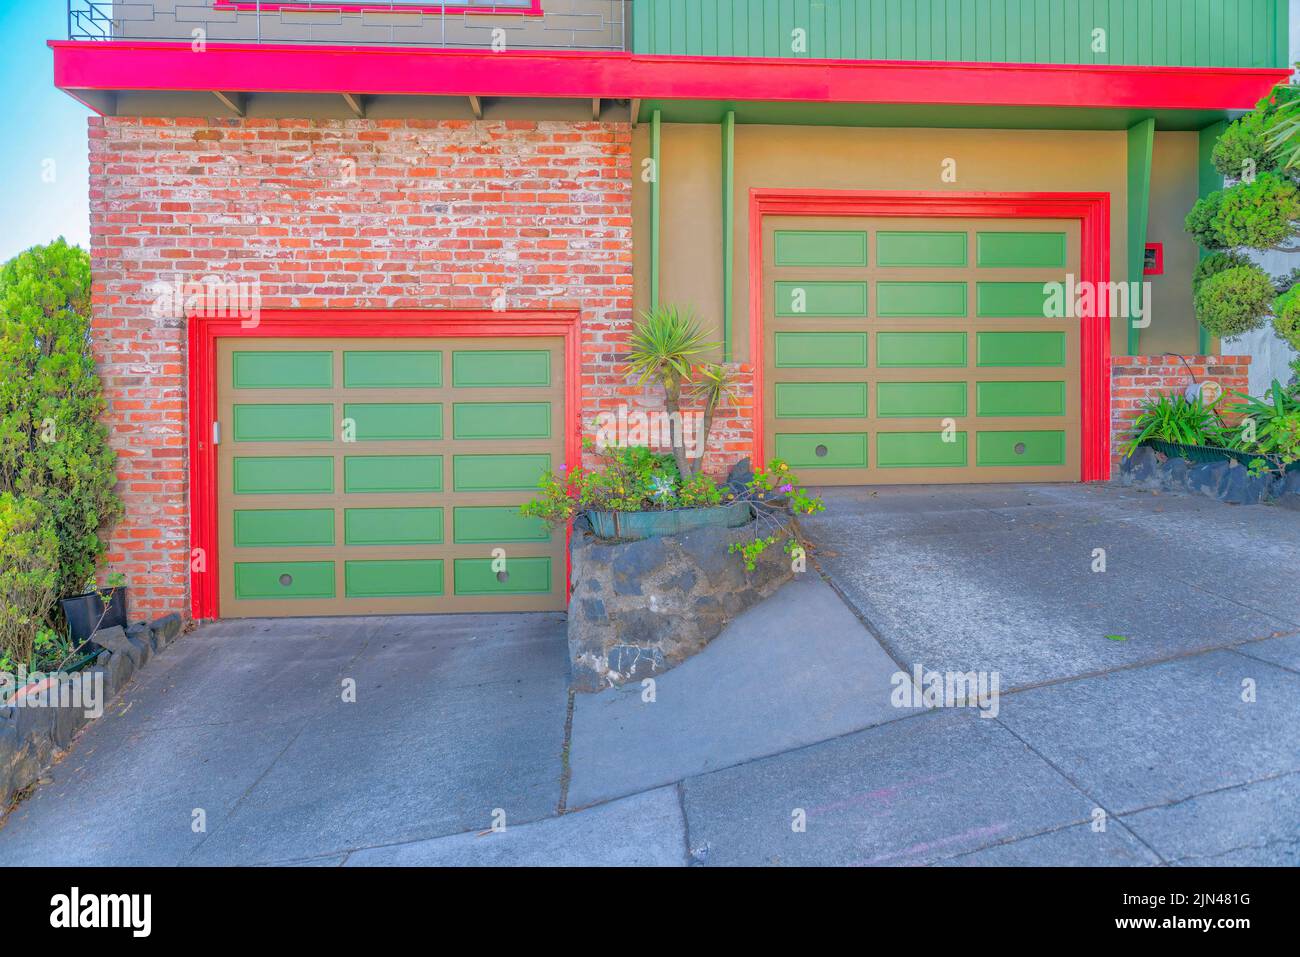 Zwei Garagentore auf einer schrägen Betonstraße in San Francisco, Kalifornien. Zwei Stadthäuser mit den gleichen Garagentoren, roten Verkleidungen und Ziegelwänden auf t Stockfoto